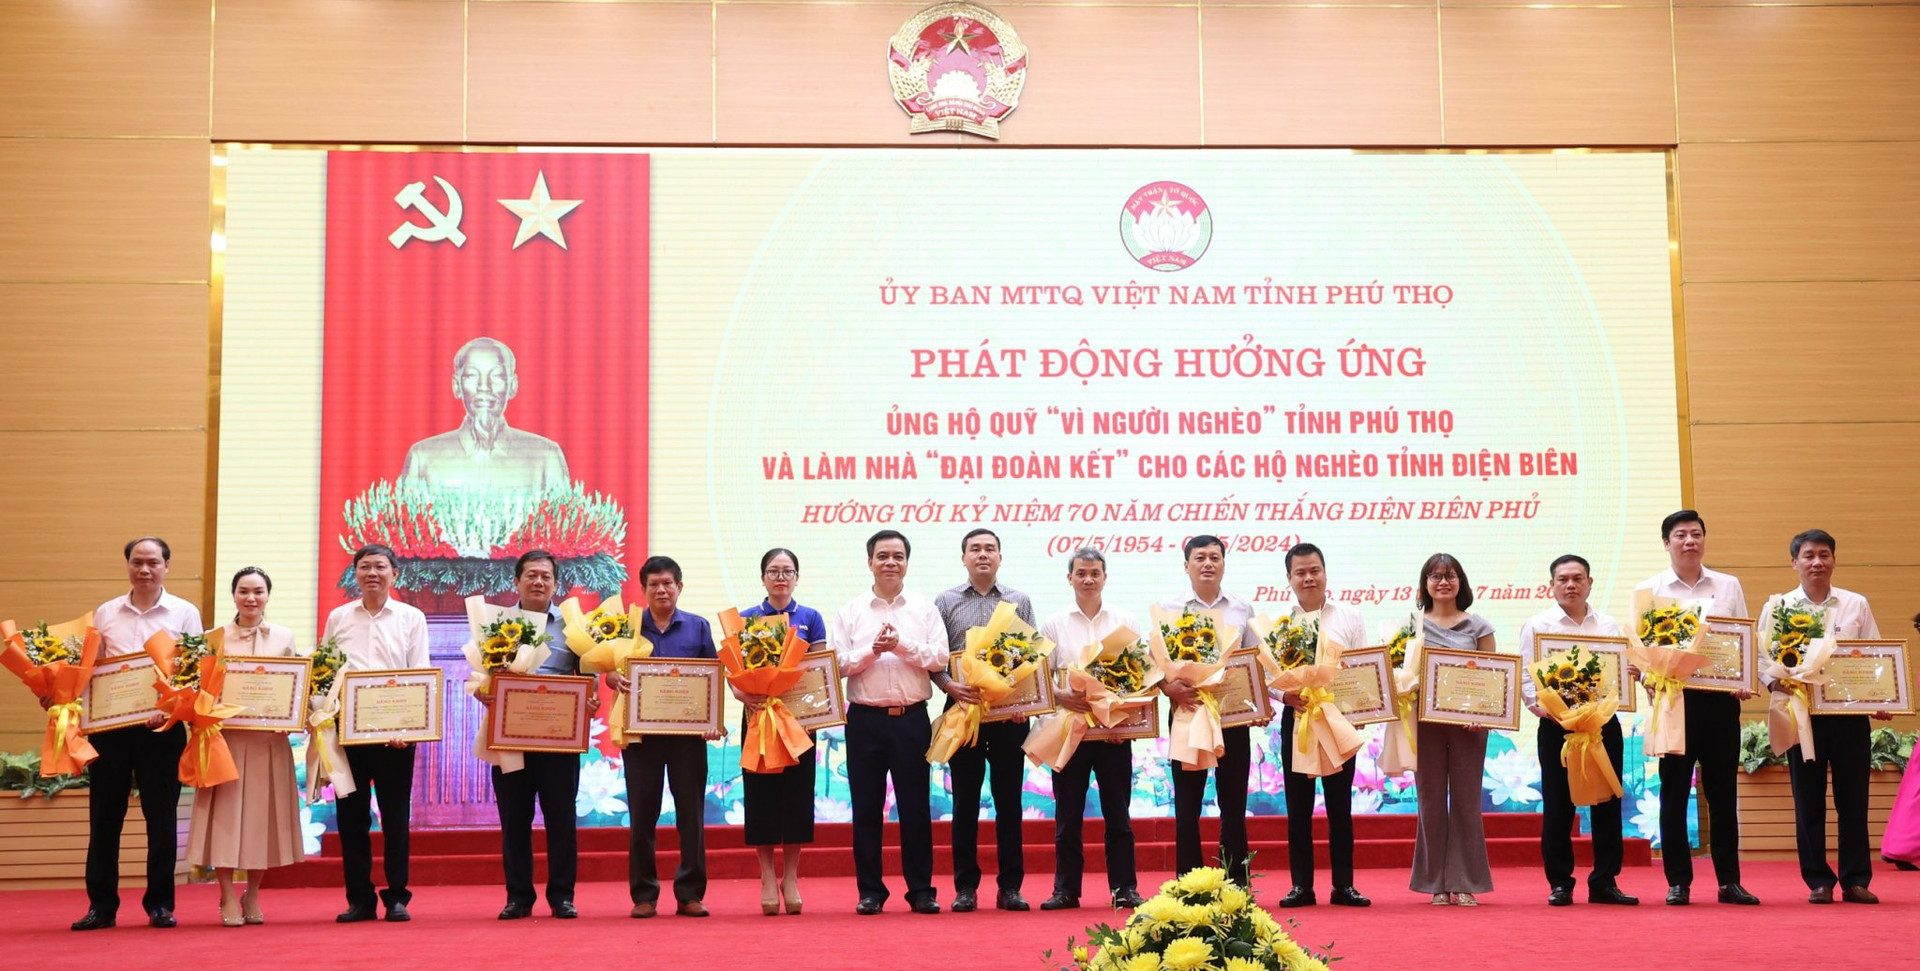 Phó Chủ tịch UBND tỉnh Nguyễn Thanh Hải trao Bằng khen của Chủ tịch UBND tỉnh cho các tập thể có nhiều đóng góp trong ủng hộ Quỹ “Vì người nghèo” của tỉnh, giai đoạn 2016 - 2022.